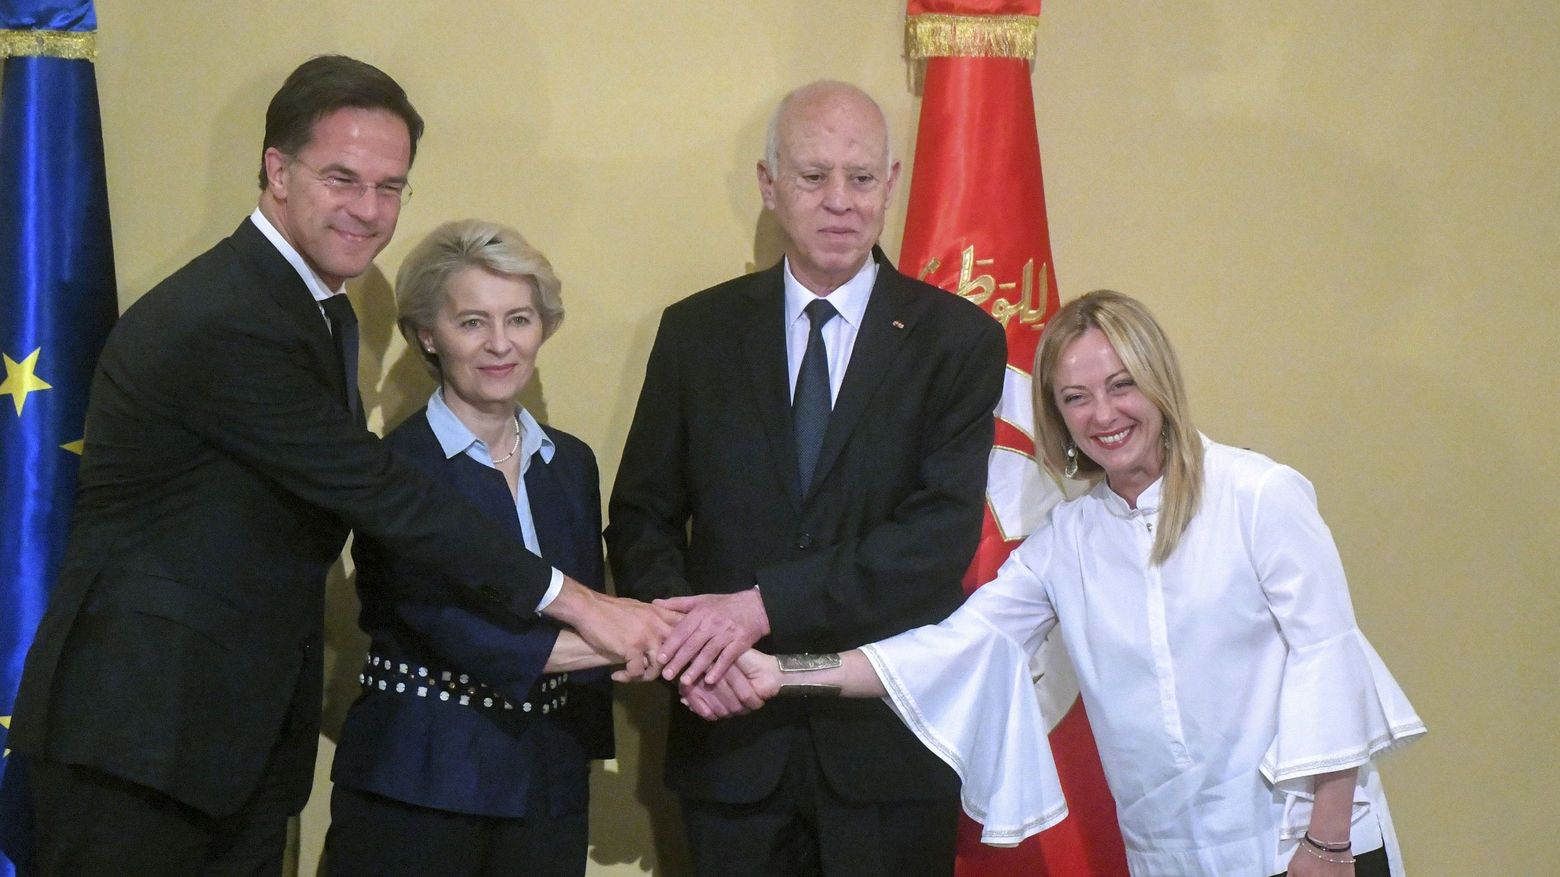 Der Tunesische Präsident Kais Saied besiegelt den EU-Tunesien Deal mit dem niederländischen Premier Mark Rutte, EU-Kommissionspräsidentin von der Leyen und der italienischen Ministerpräsidentin Meloni.